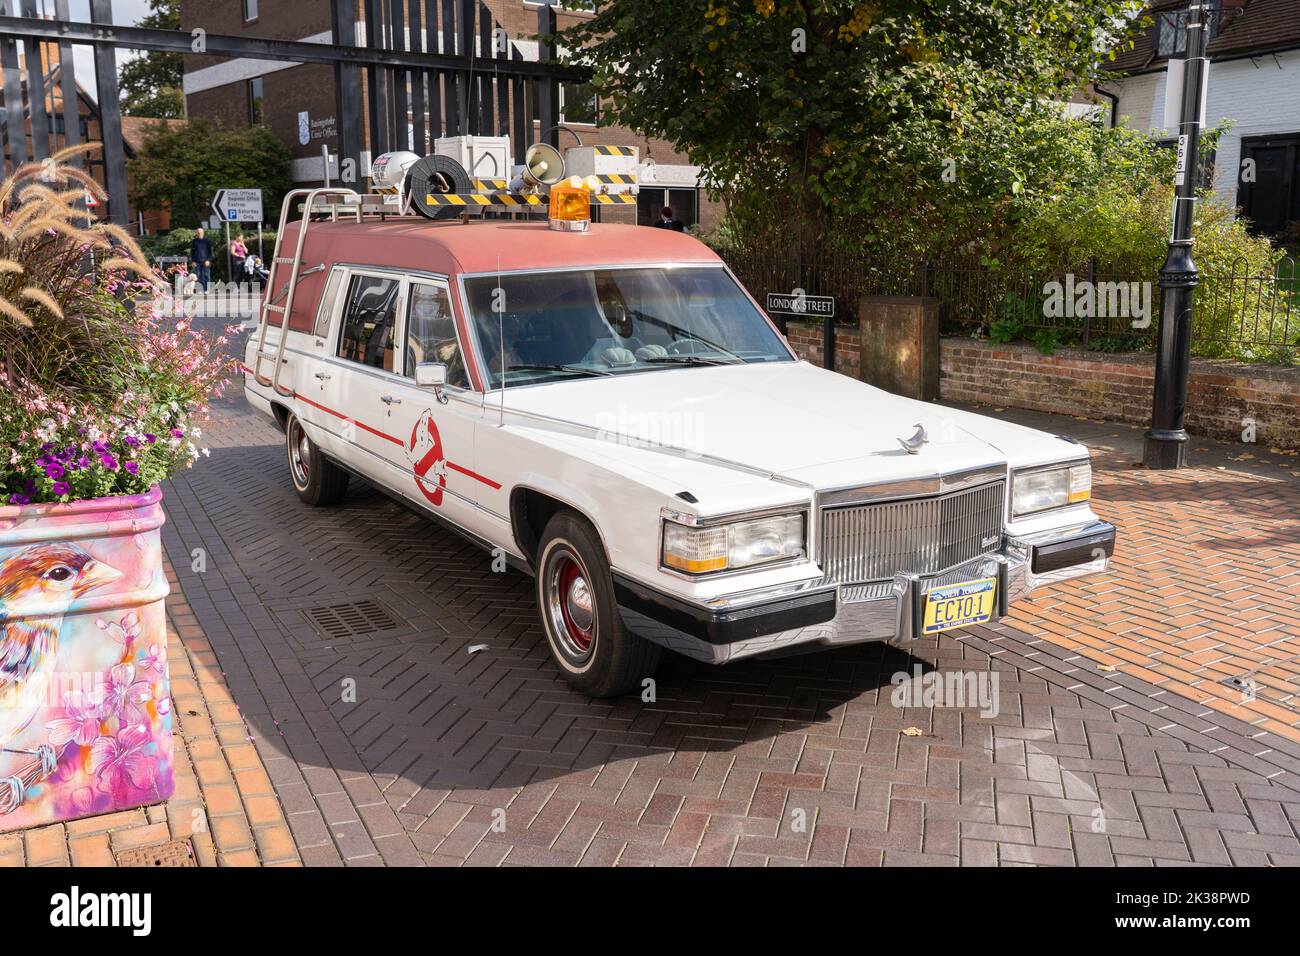 Una réplica DEL coche DE Ghostbusters ECTO 1 en London Street, el sábado 24th de septiembre, de Love Basingstoke en apoyo del Festival de Cine Exit 6. REINO UNIDO Foto de stock